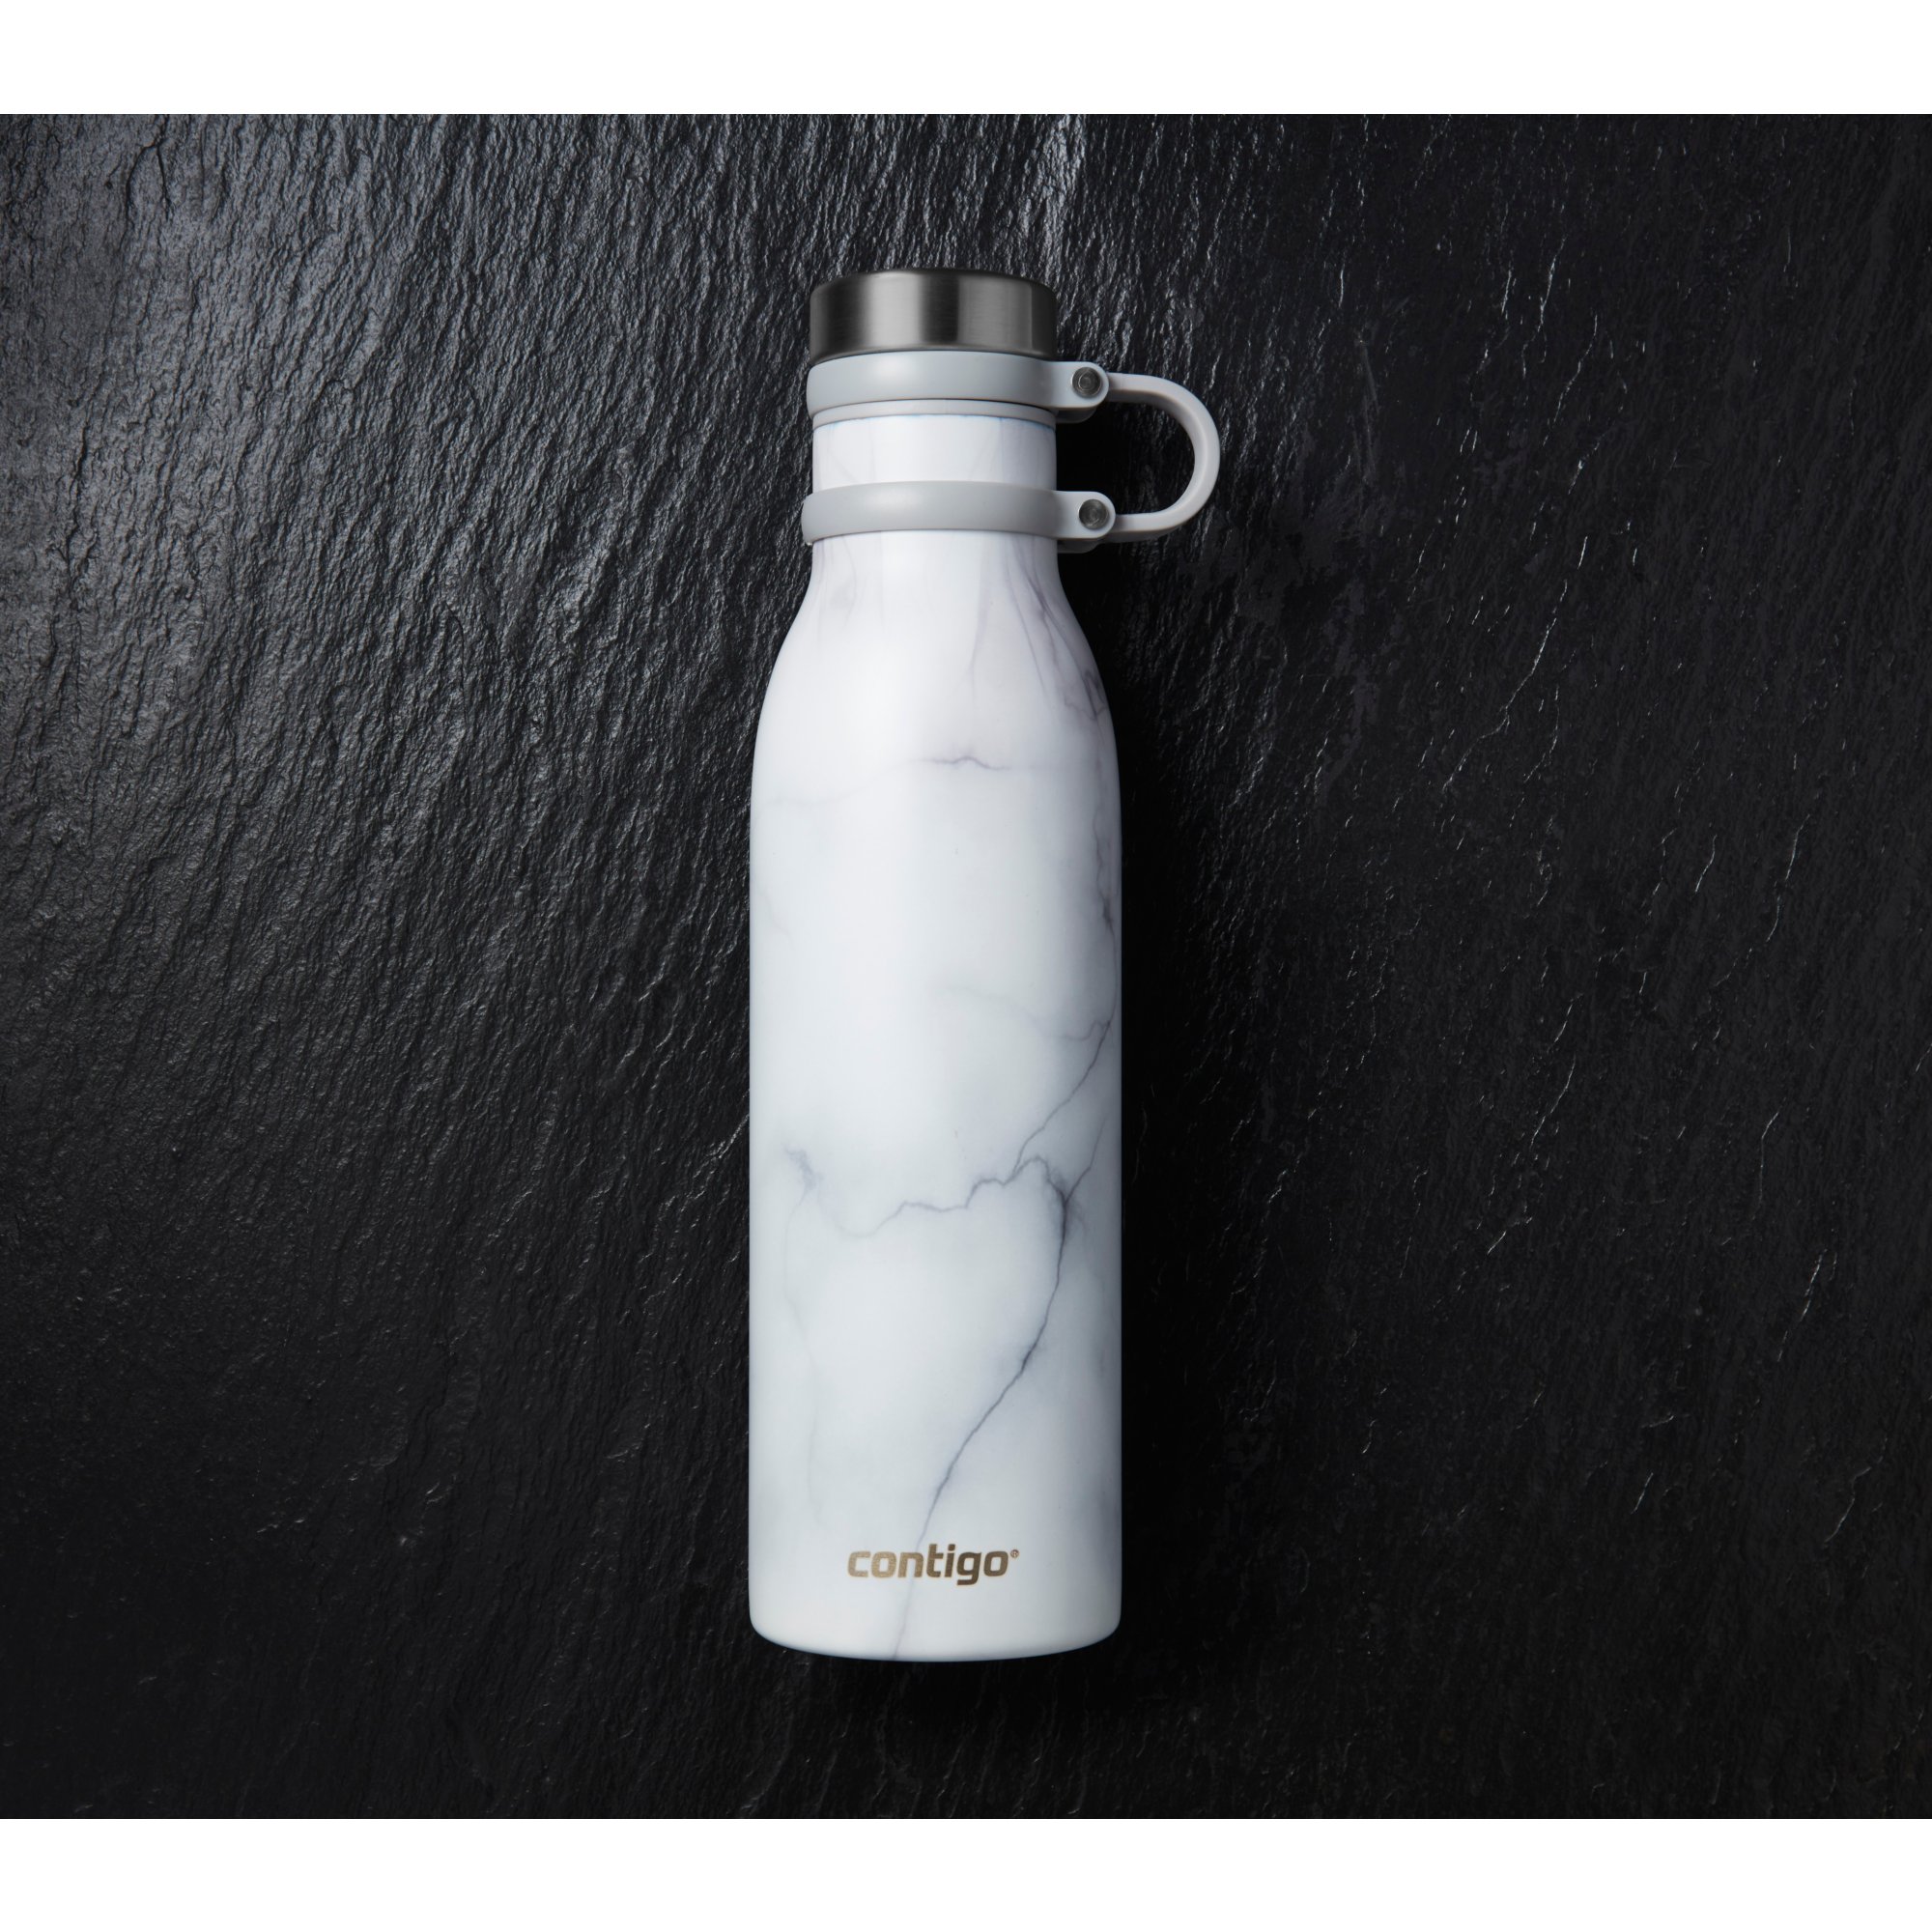 Contigo Matterhorn 20-oz. Water Bottle